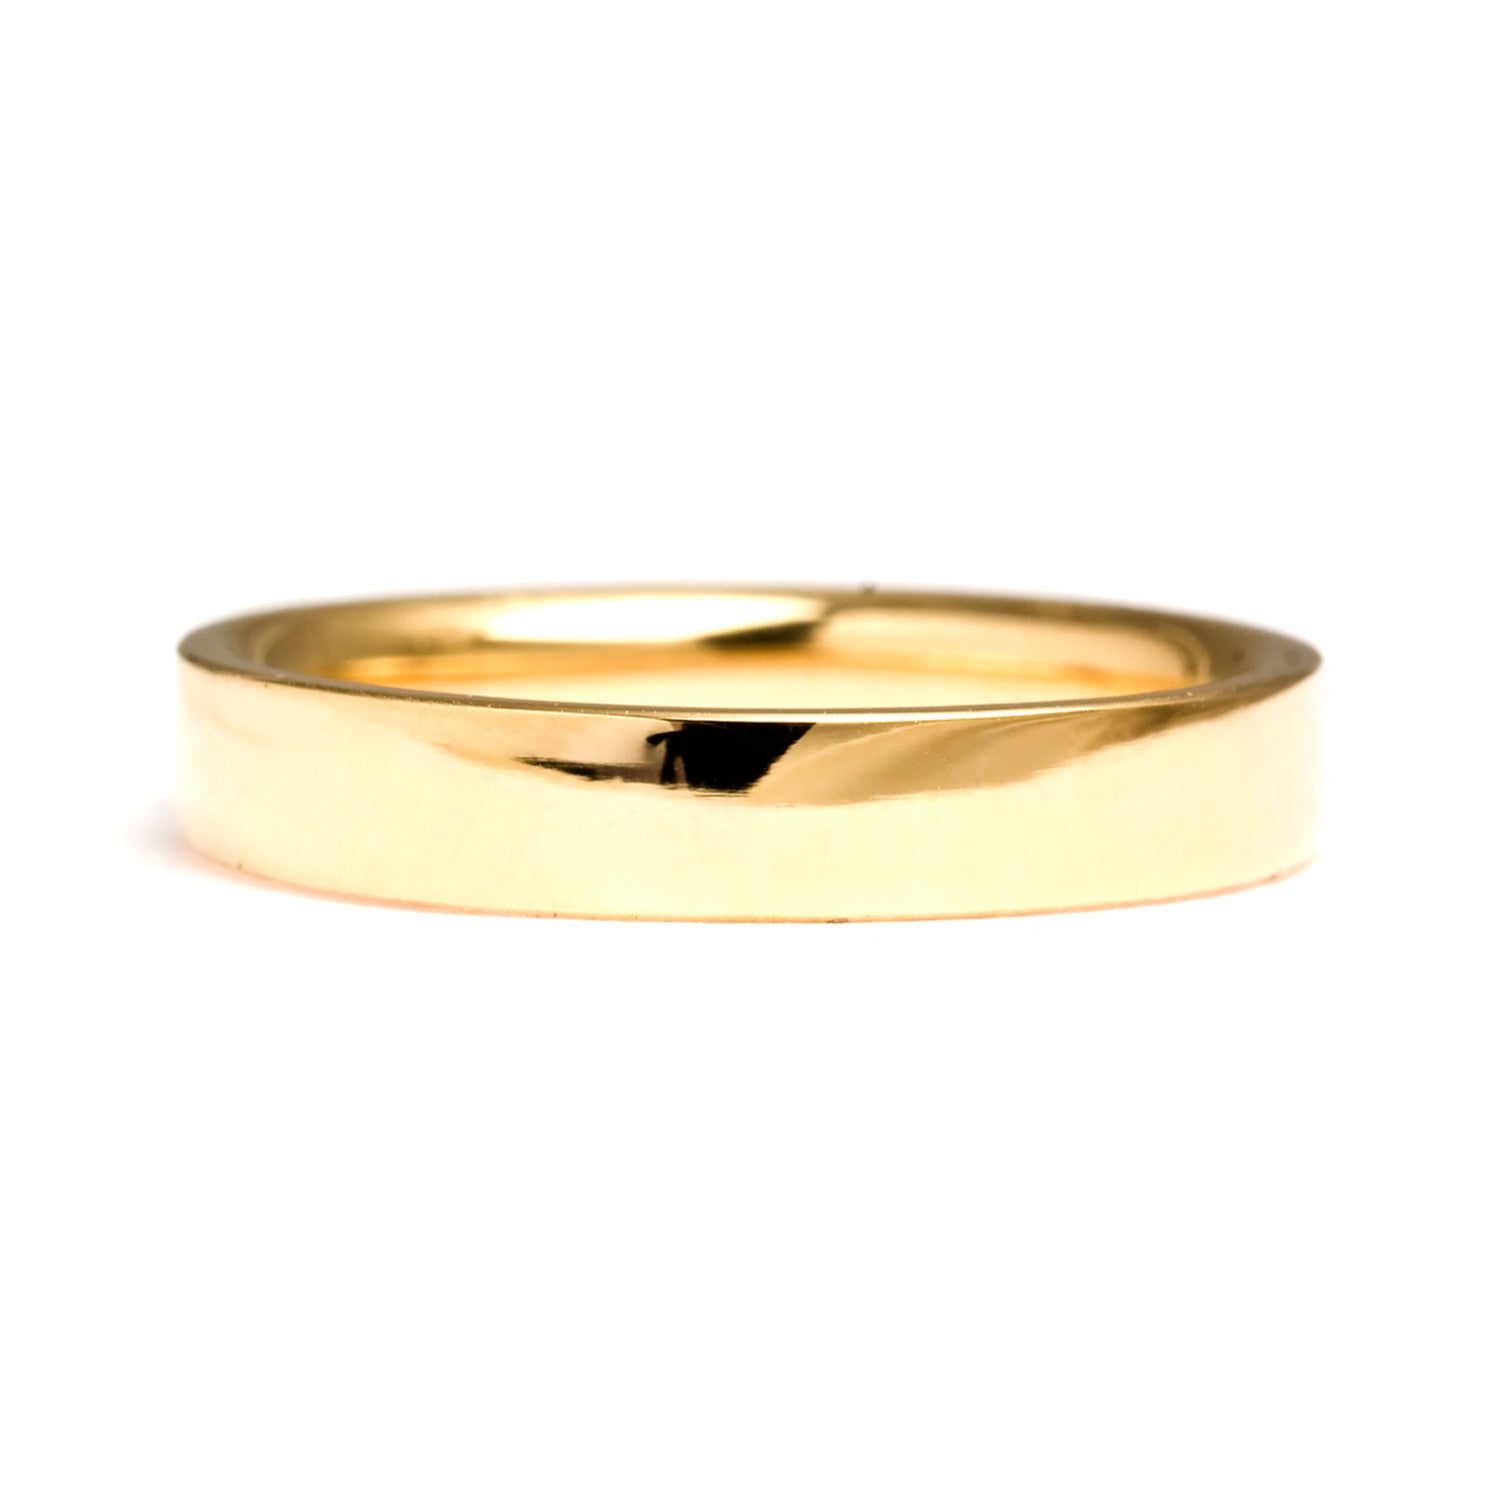 Flat Court Ethical Gold Wedding Ring, Medium